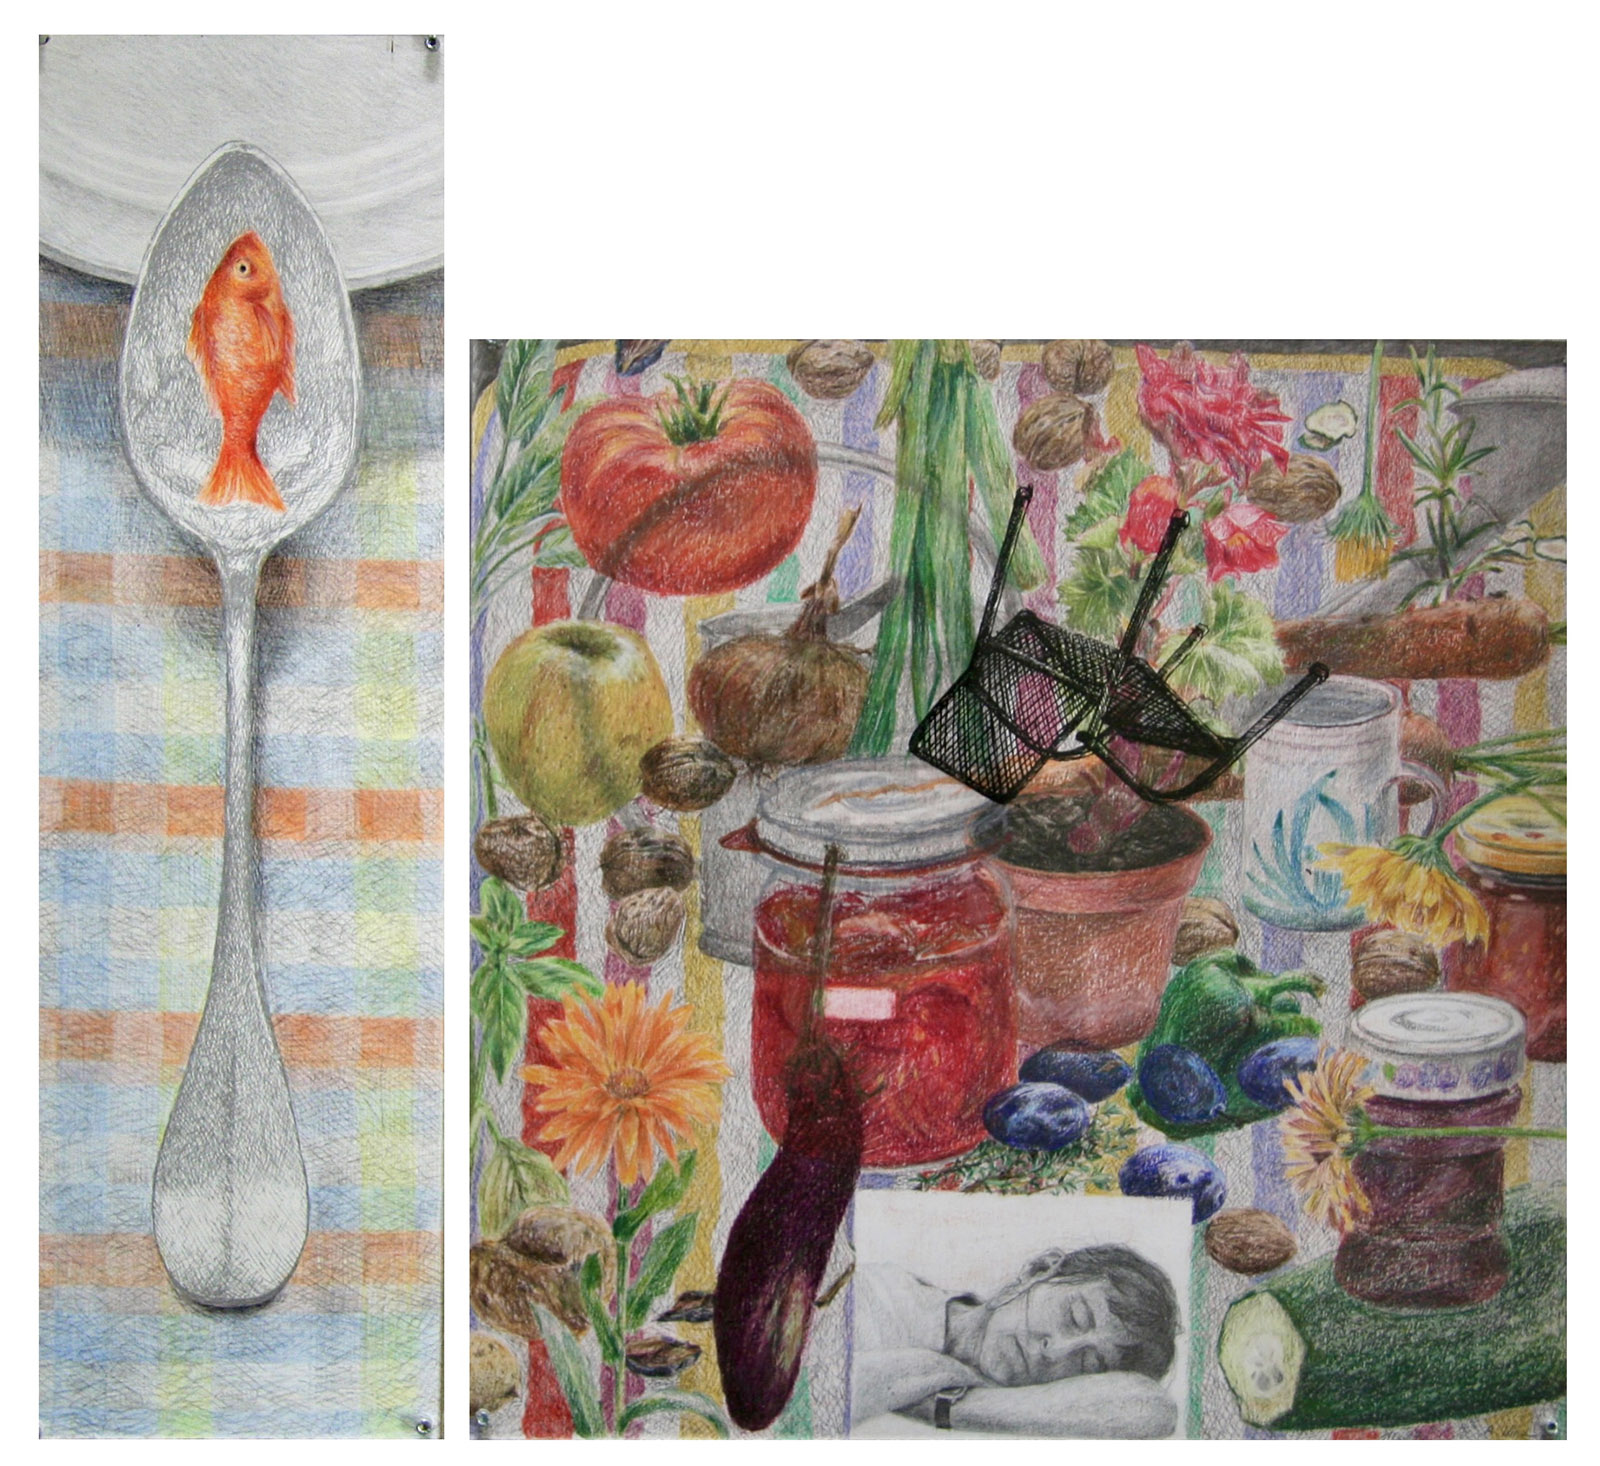 Erntezeit, 2-teilig, 1999, Buntstift, Bleistift, Tusche auf Papier, Mdf-Platte, 15x50, 40x40 cm